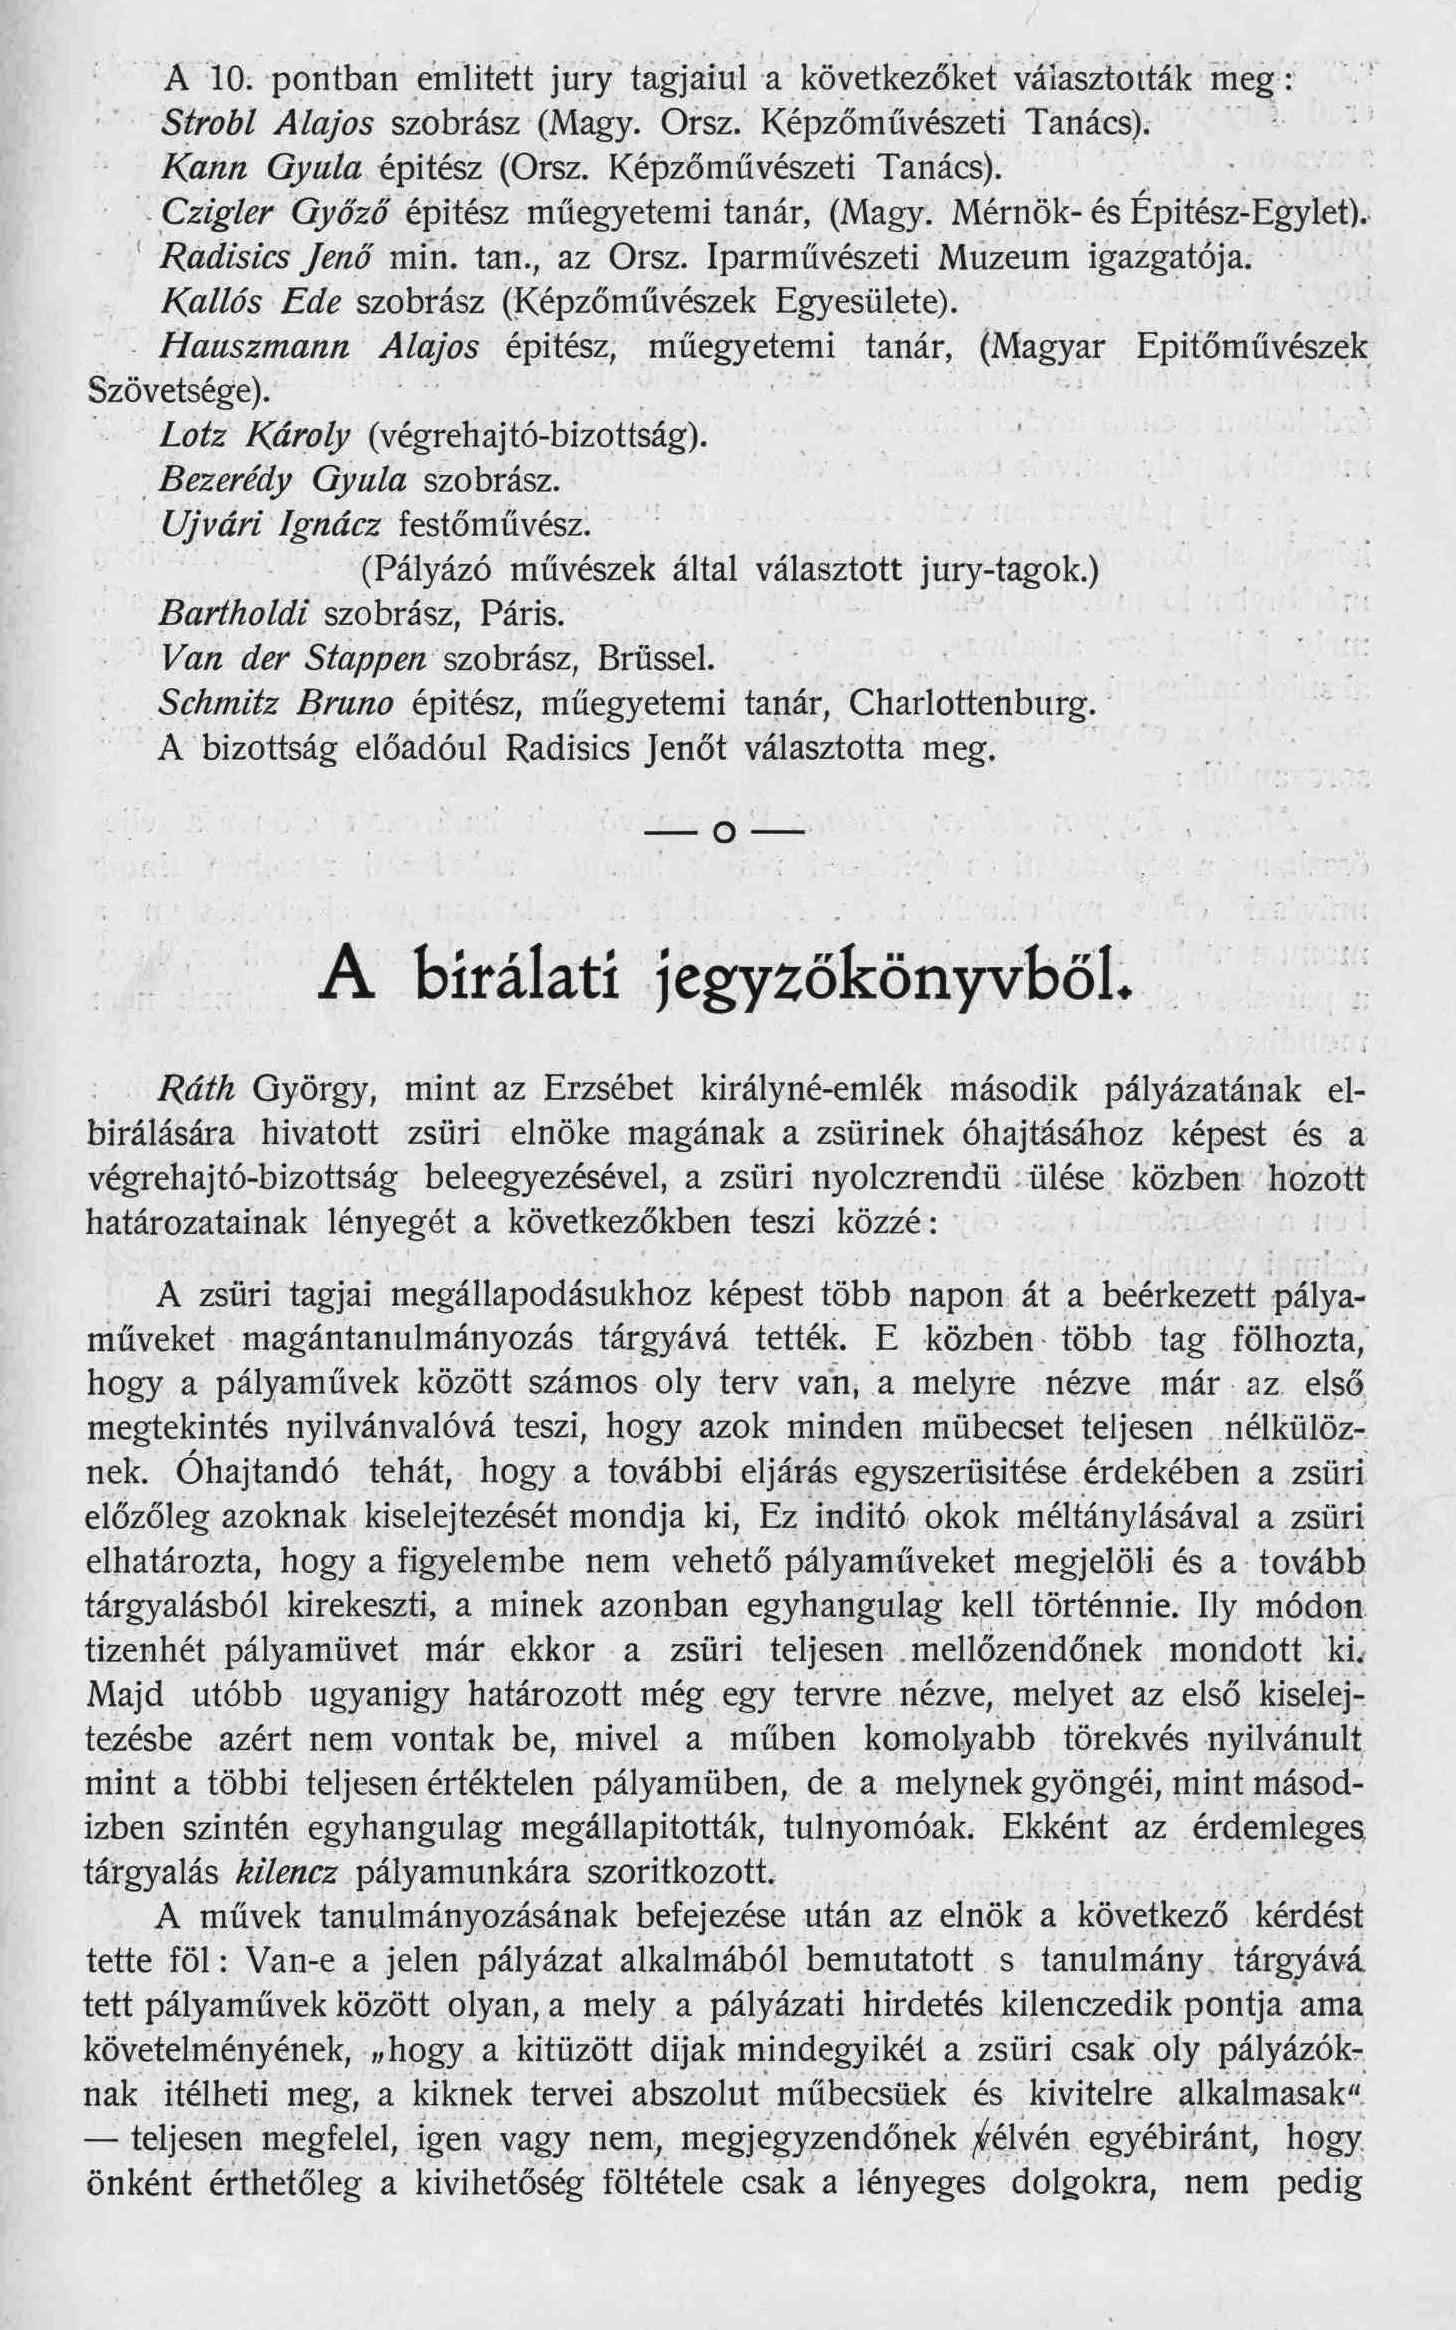 Magyar Pályázatok, 1903/6. 29. p.